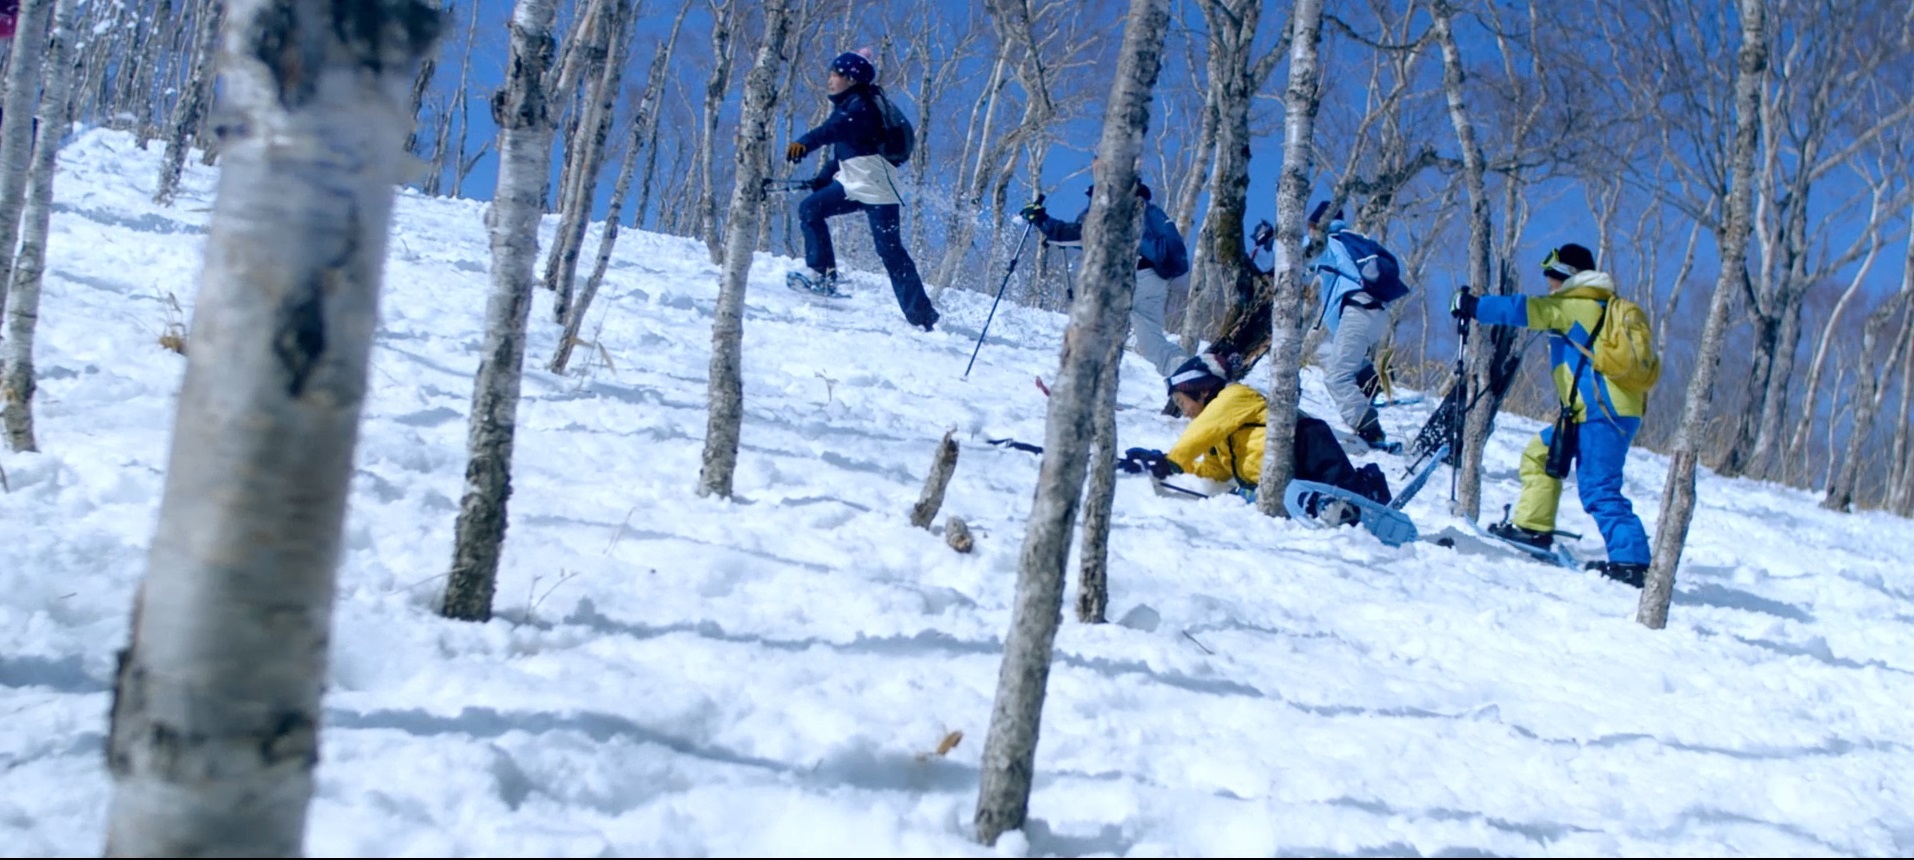 雪山の木の間をスキーで歩いたり、転んだりしている人たちを写した写真